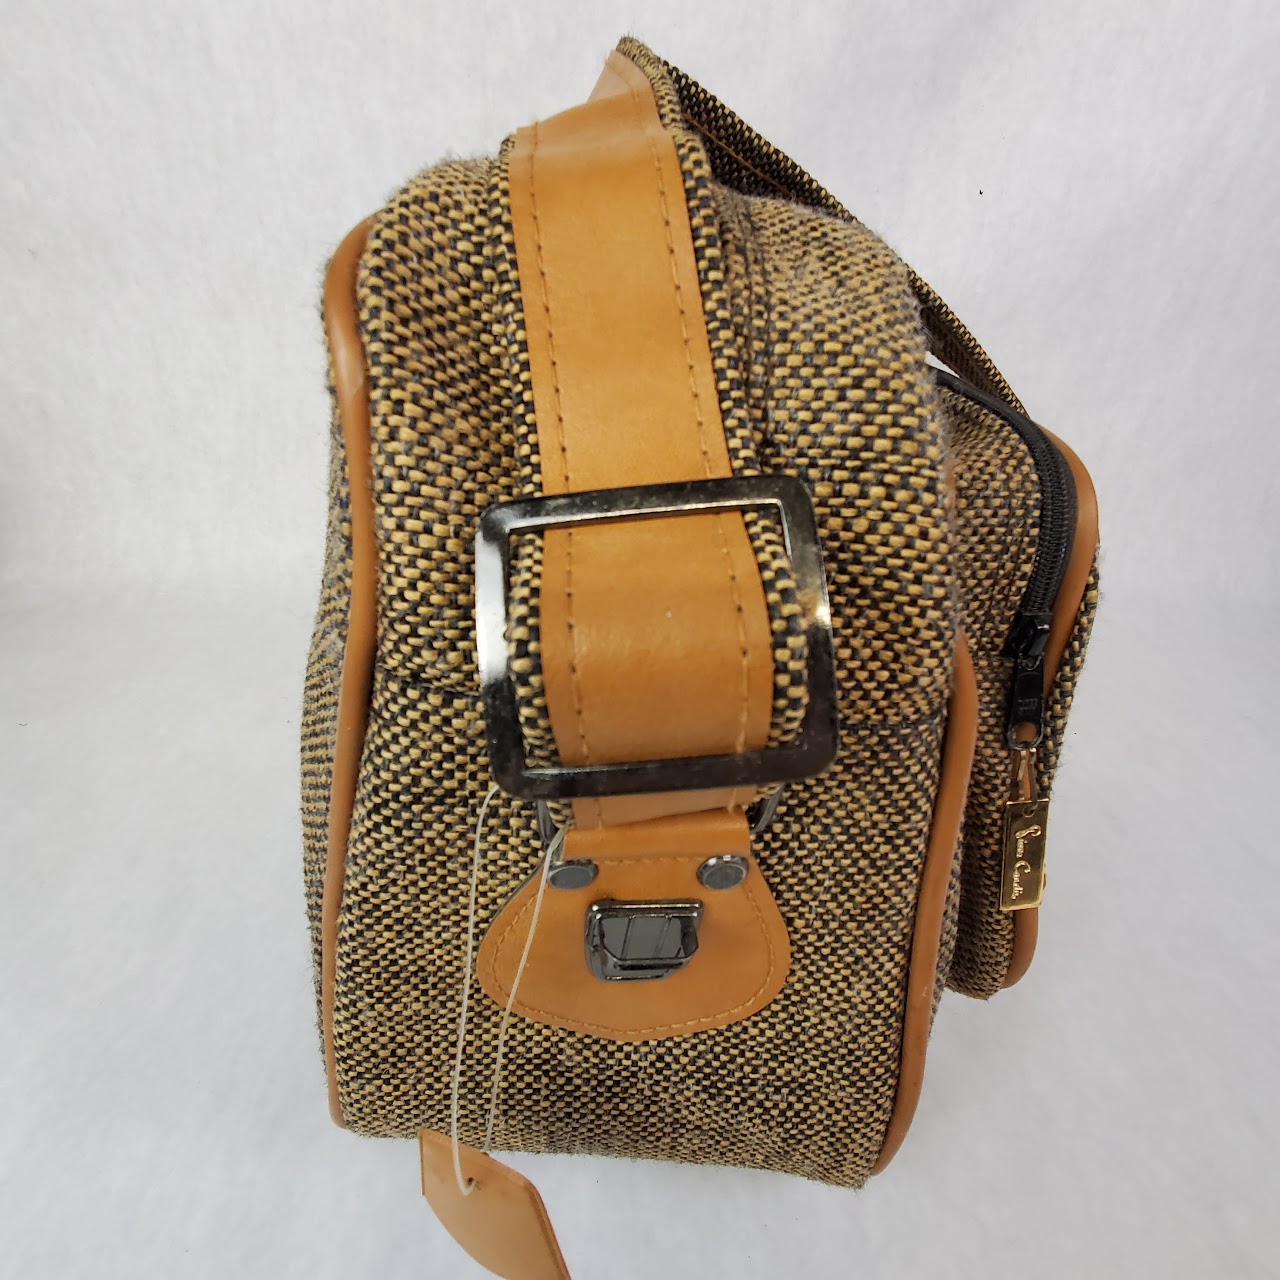 Pierre Cardin Vintage Weekender Bag